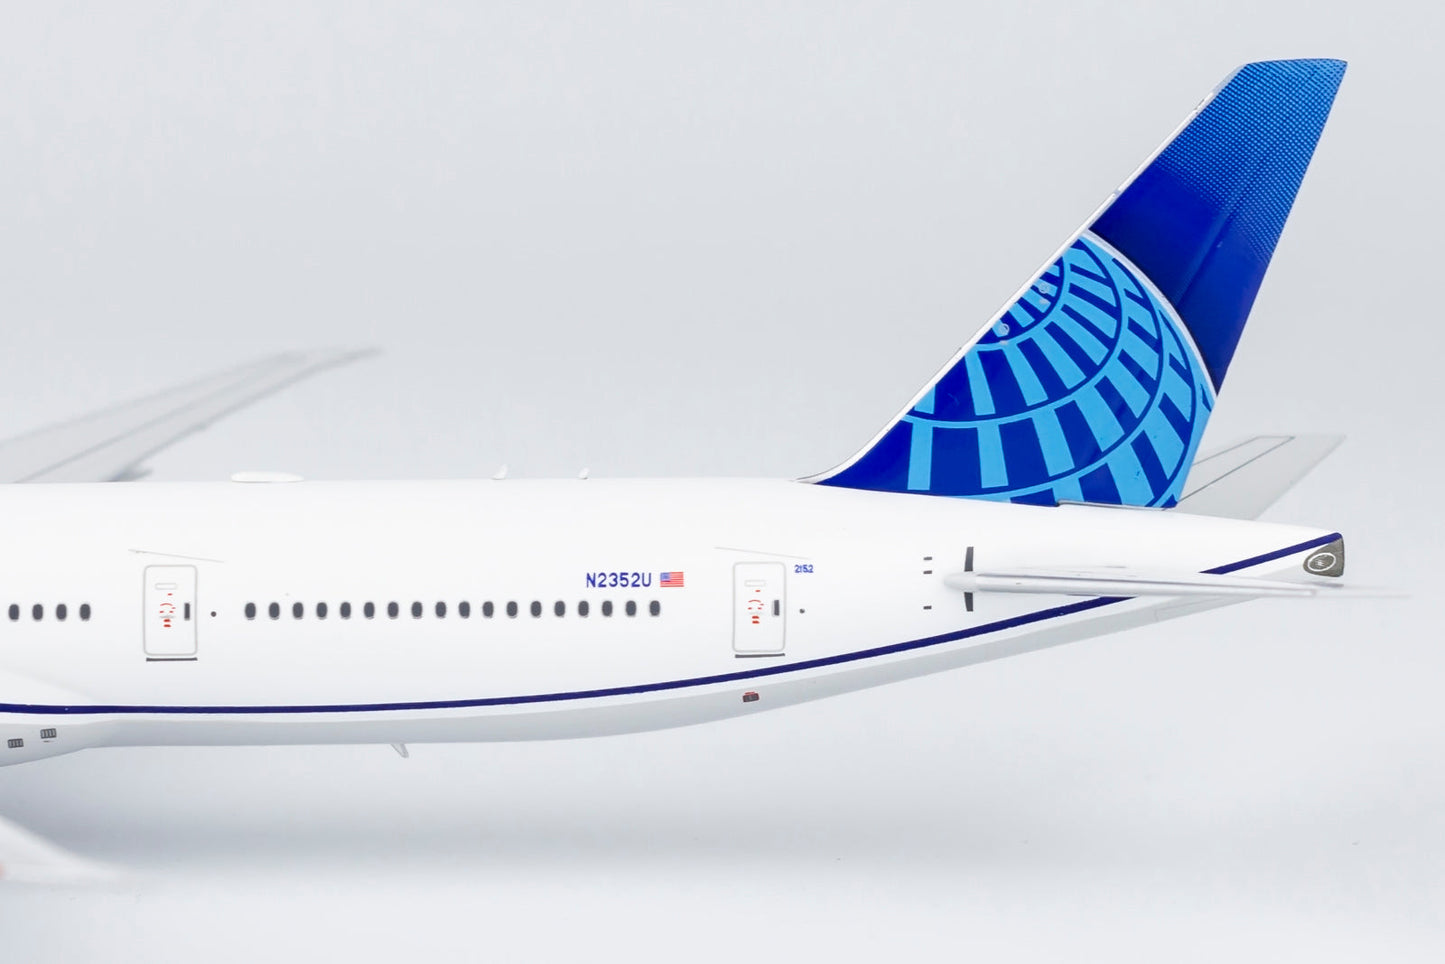 1/400 United Airlines B 777-300ER "Evo Blue" NG Models 73008